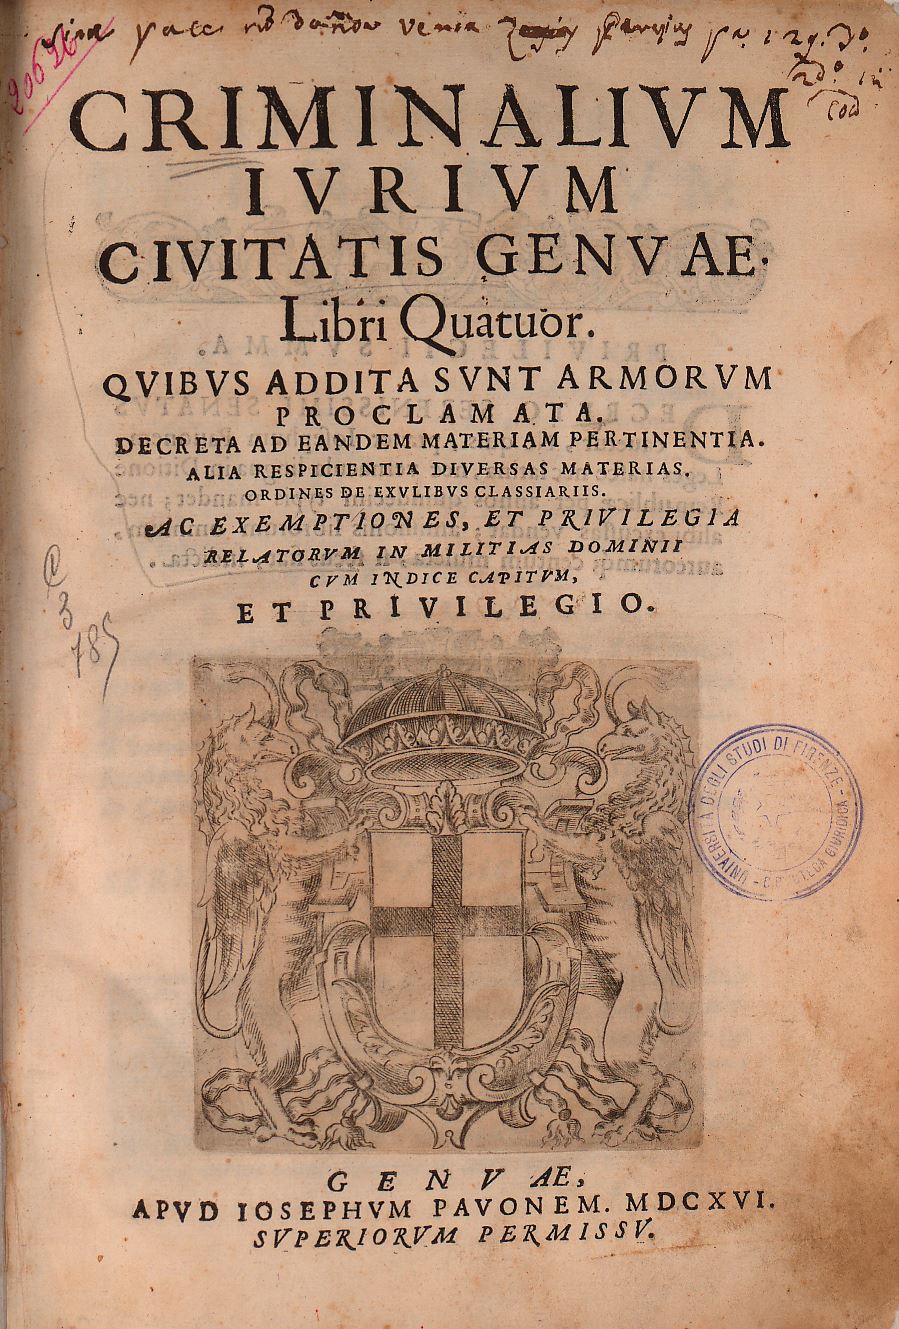 Criminalium iurium civitatis Genuae 